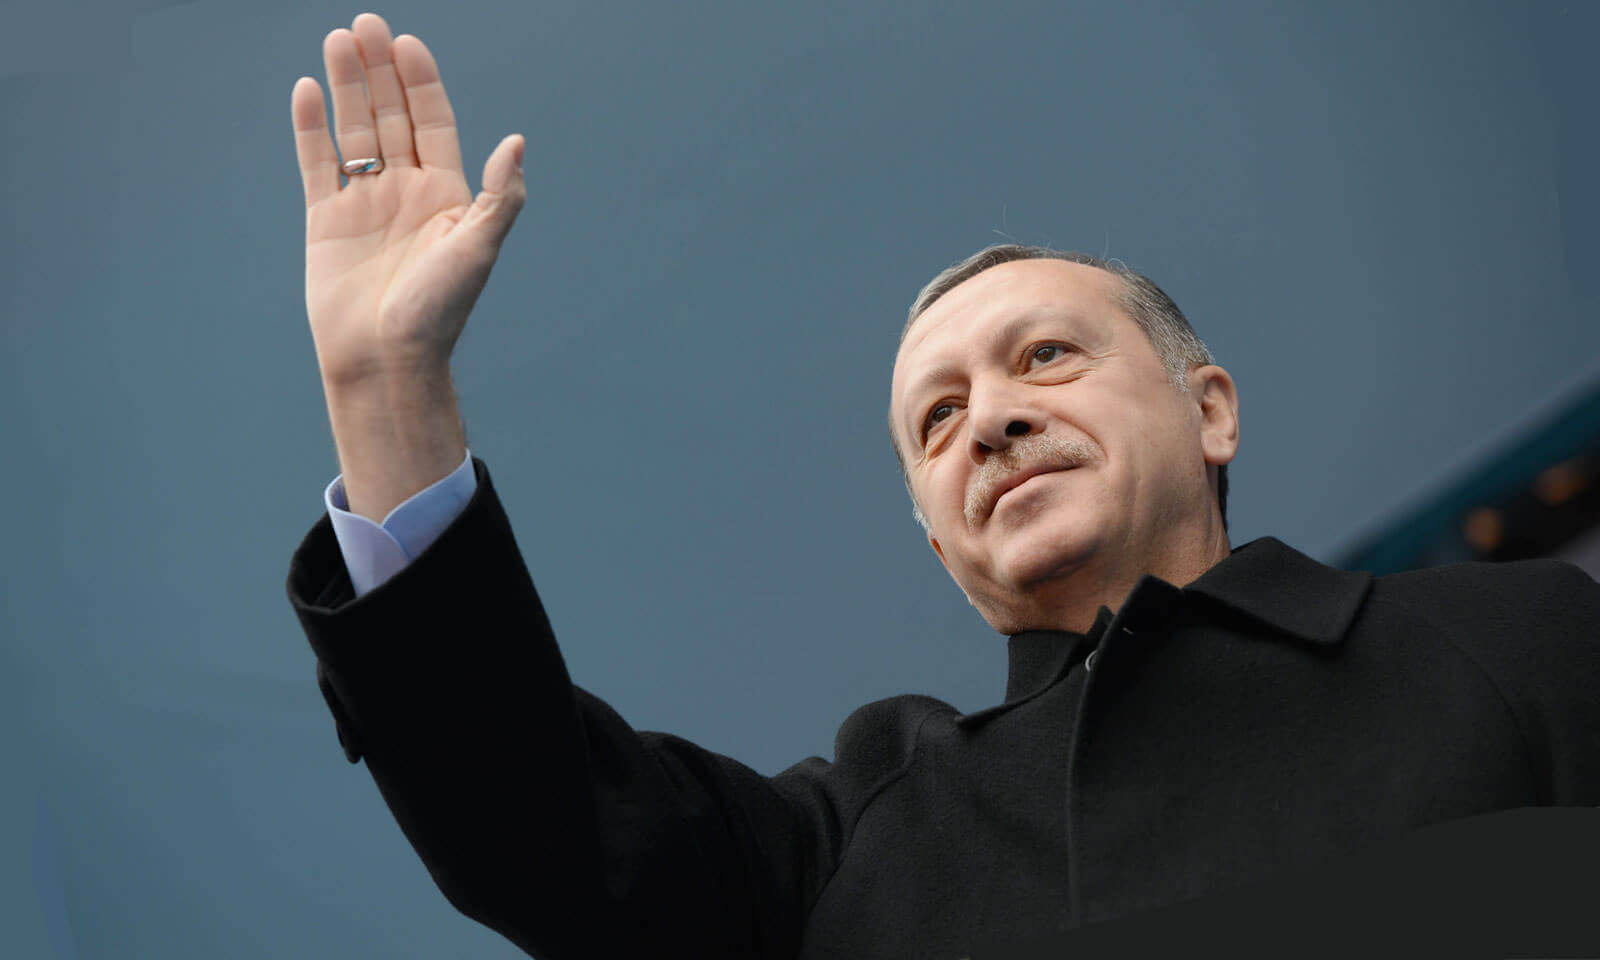 Das türkische Referendum – die wichtigsten Fragen und Antworten